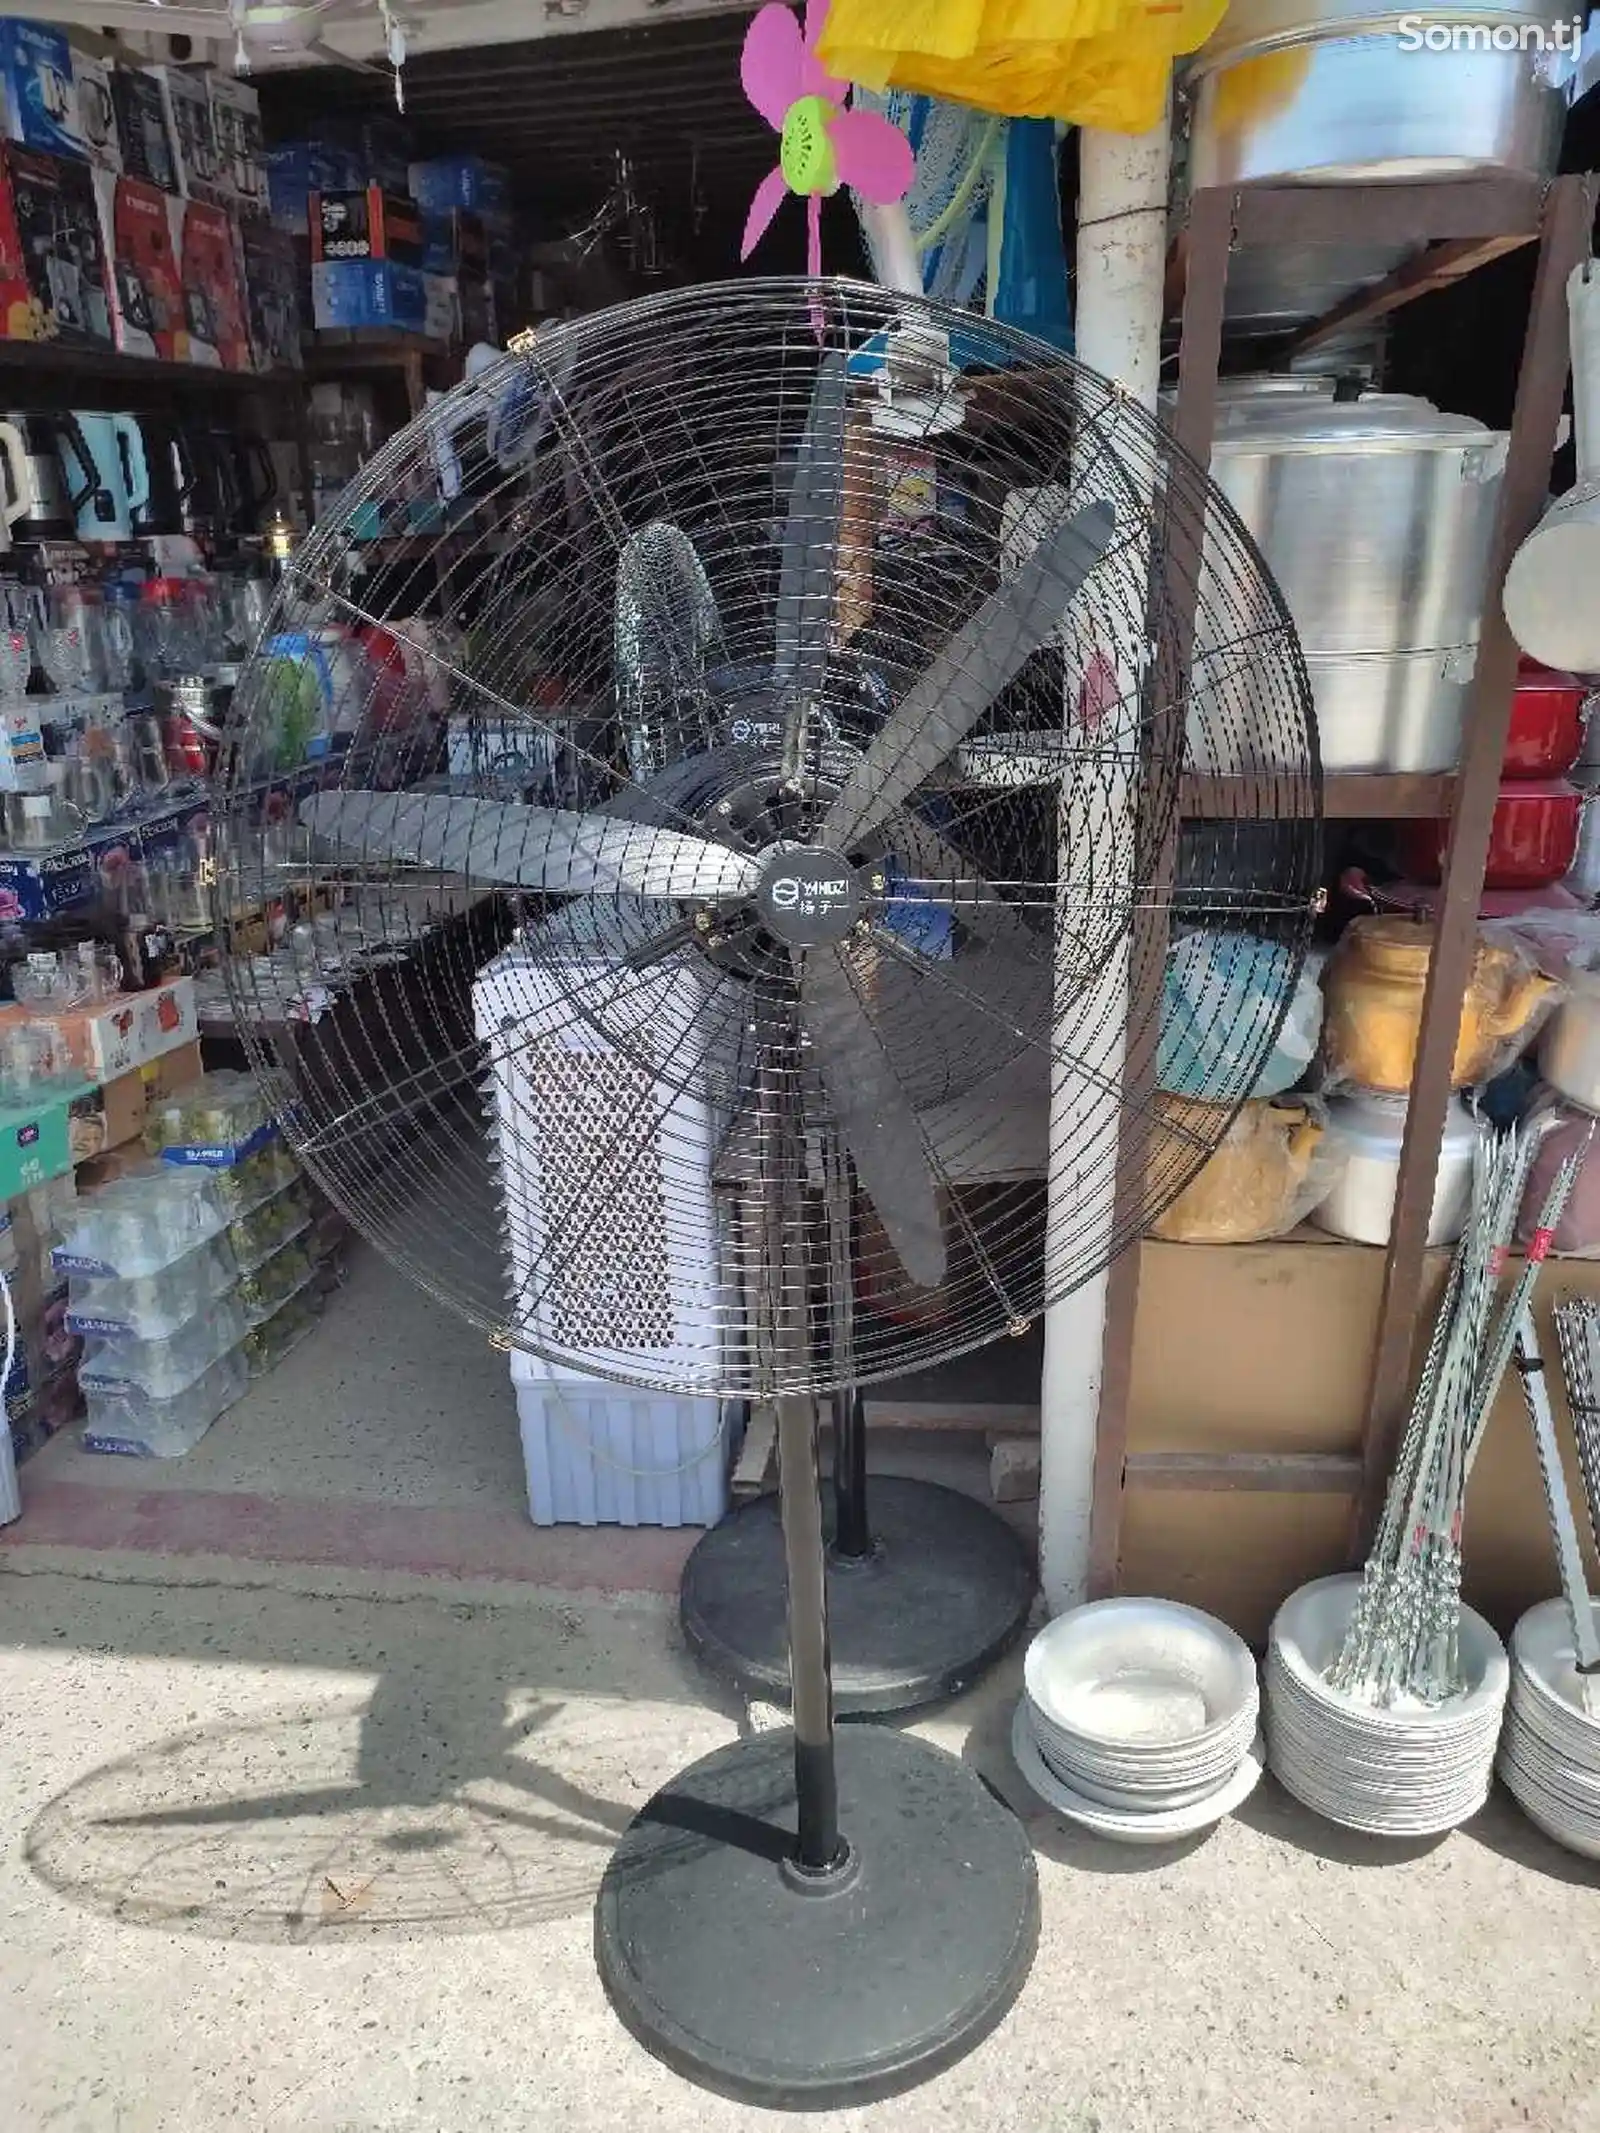 Вентилятор Pak Fan-3